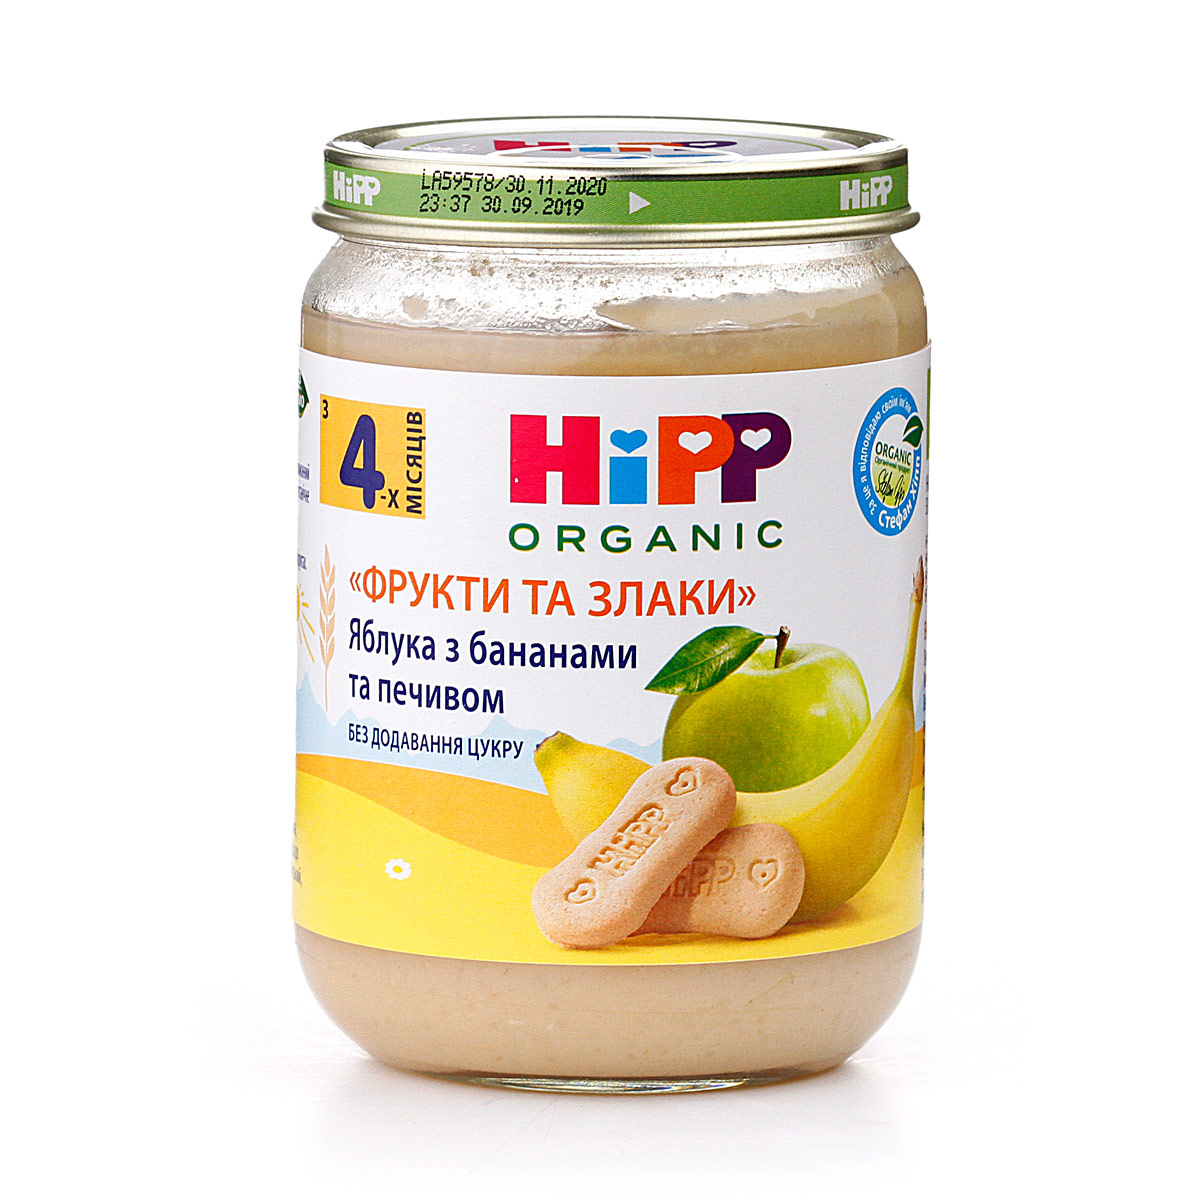 Органічне фруктово-злакове пюре "Яблука з бананами та печивом" - фото 6 | Интернет-магазин Shop HiPP